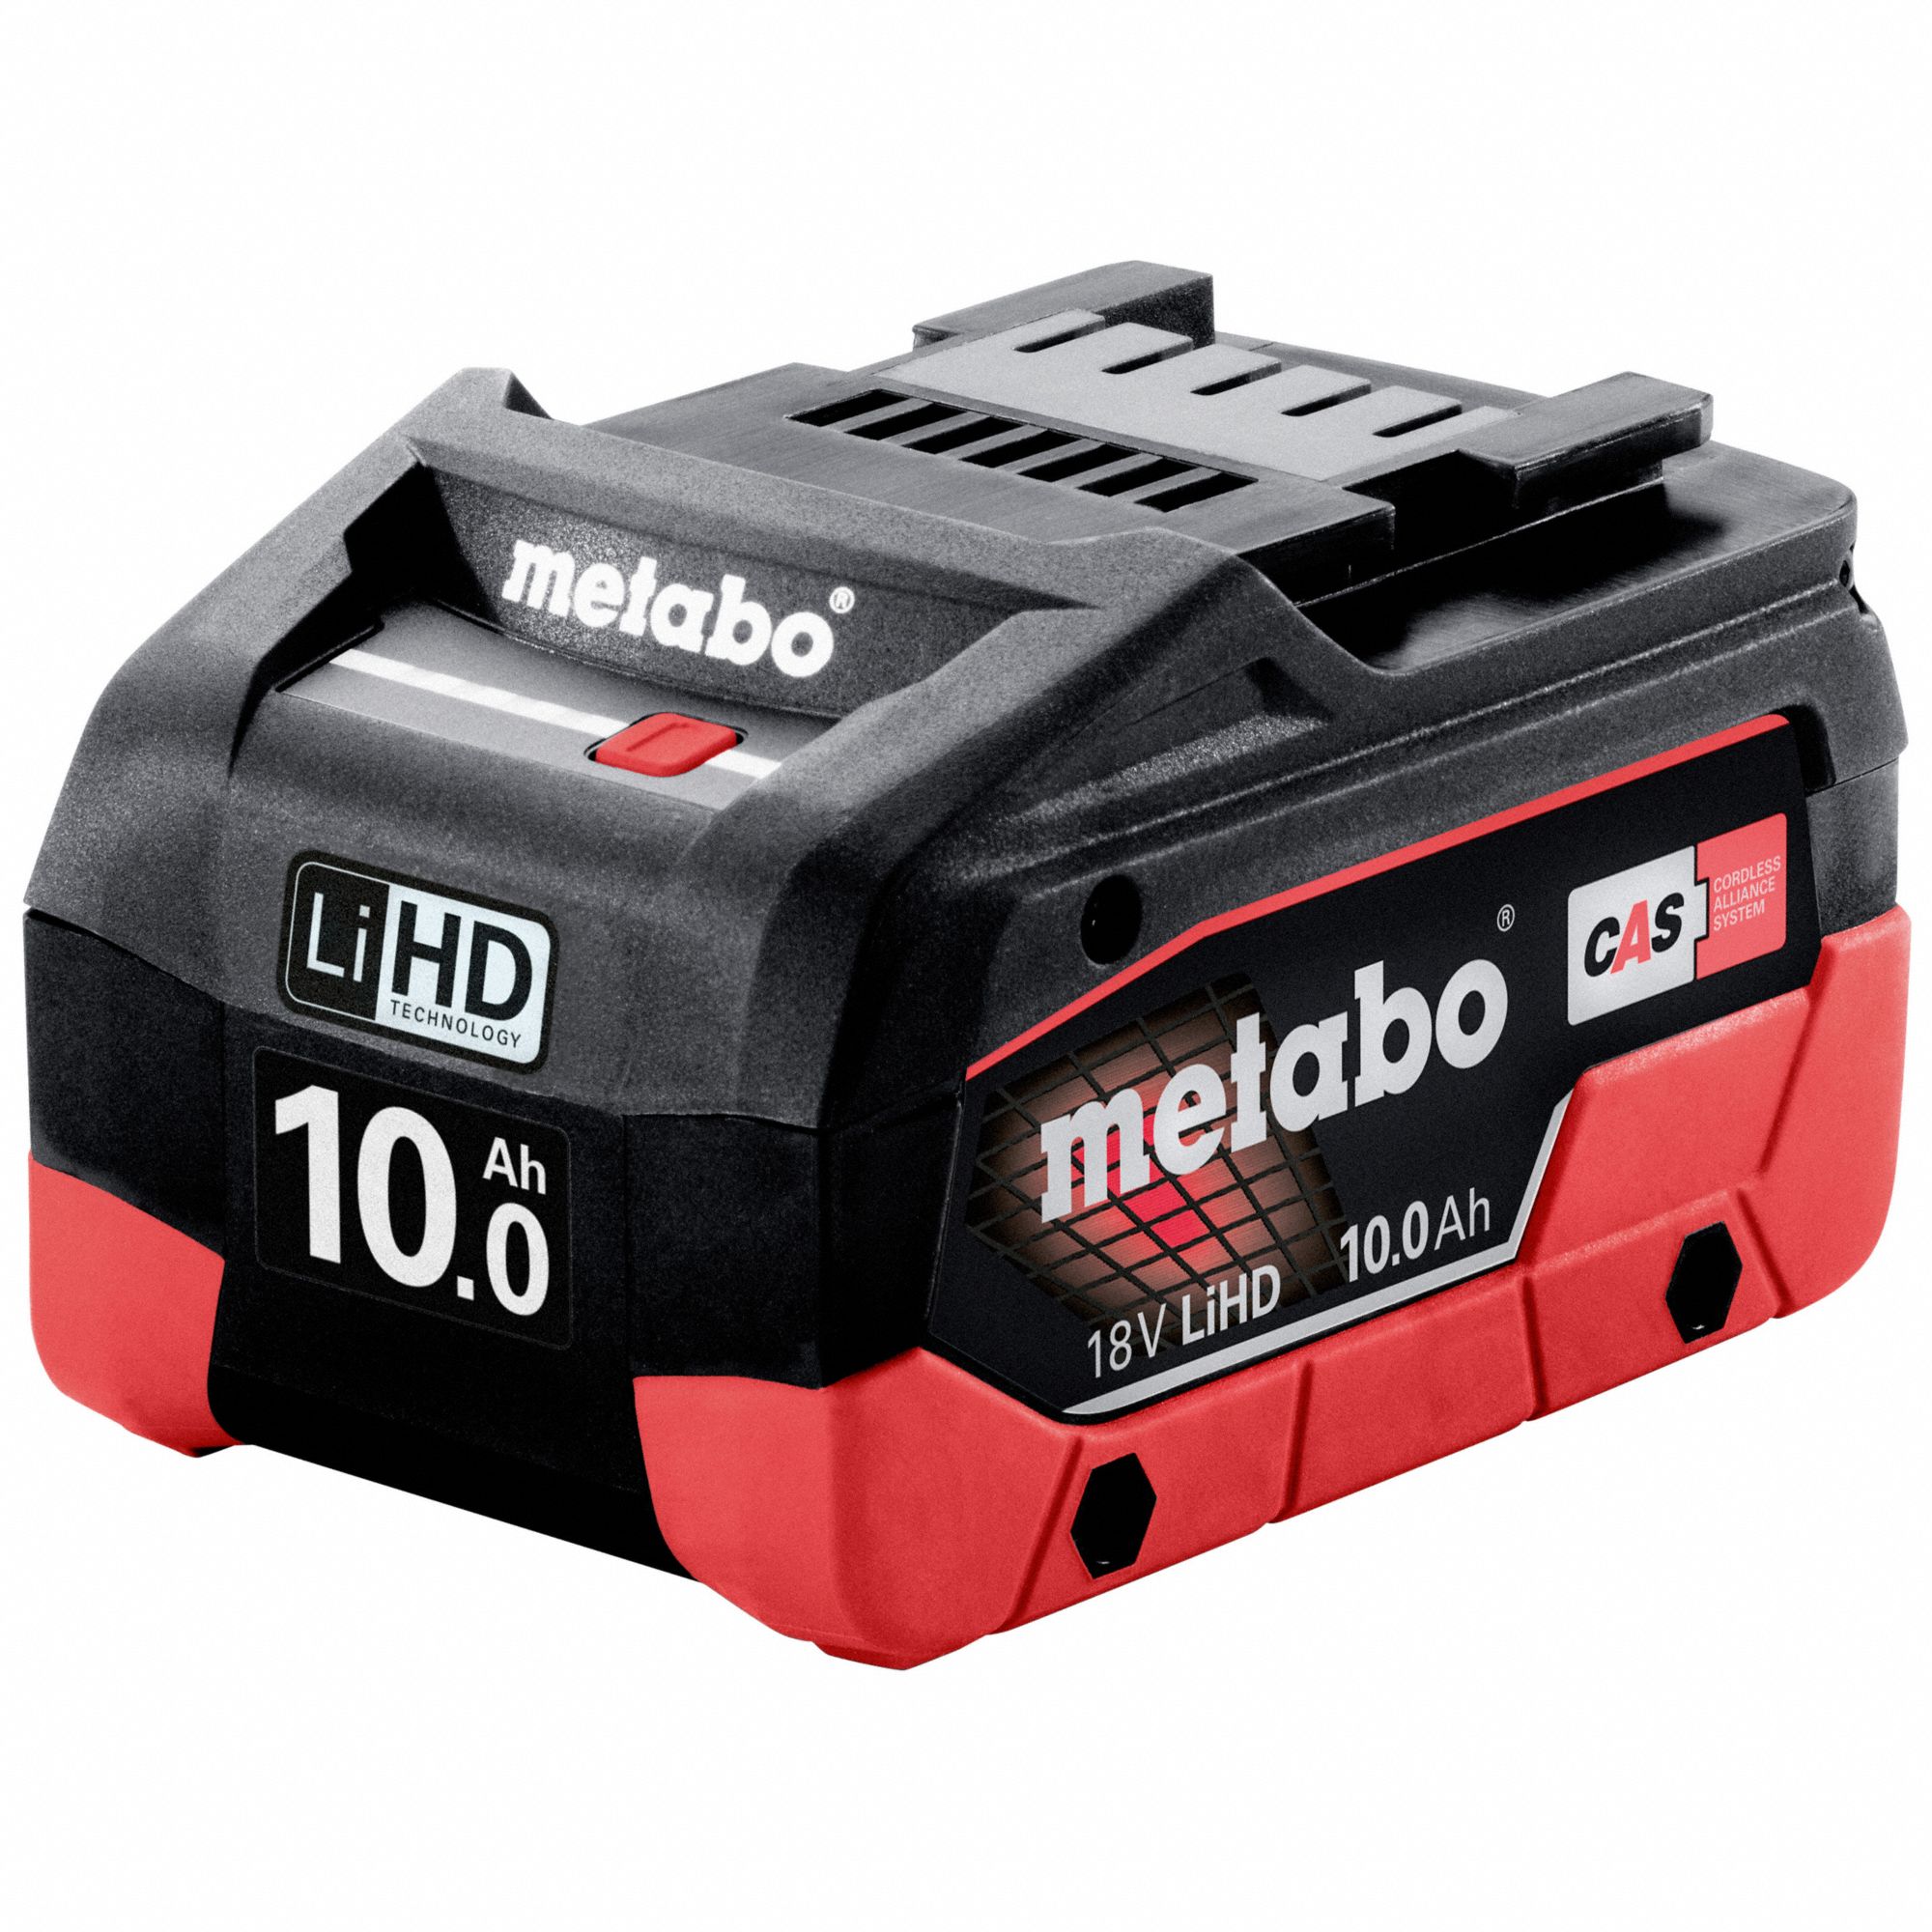 At søge tilflugt Tips spænding Metabo, 18V CAS, 18V 10.0 Ah LiHD Battery Pack - 793ZJ5|625549000 - Grainger